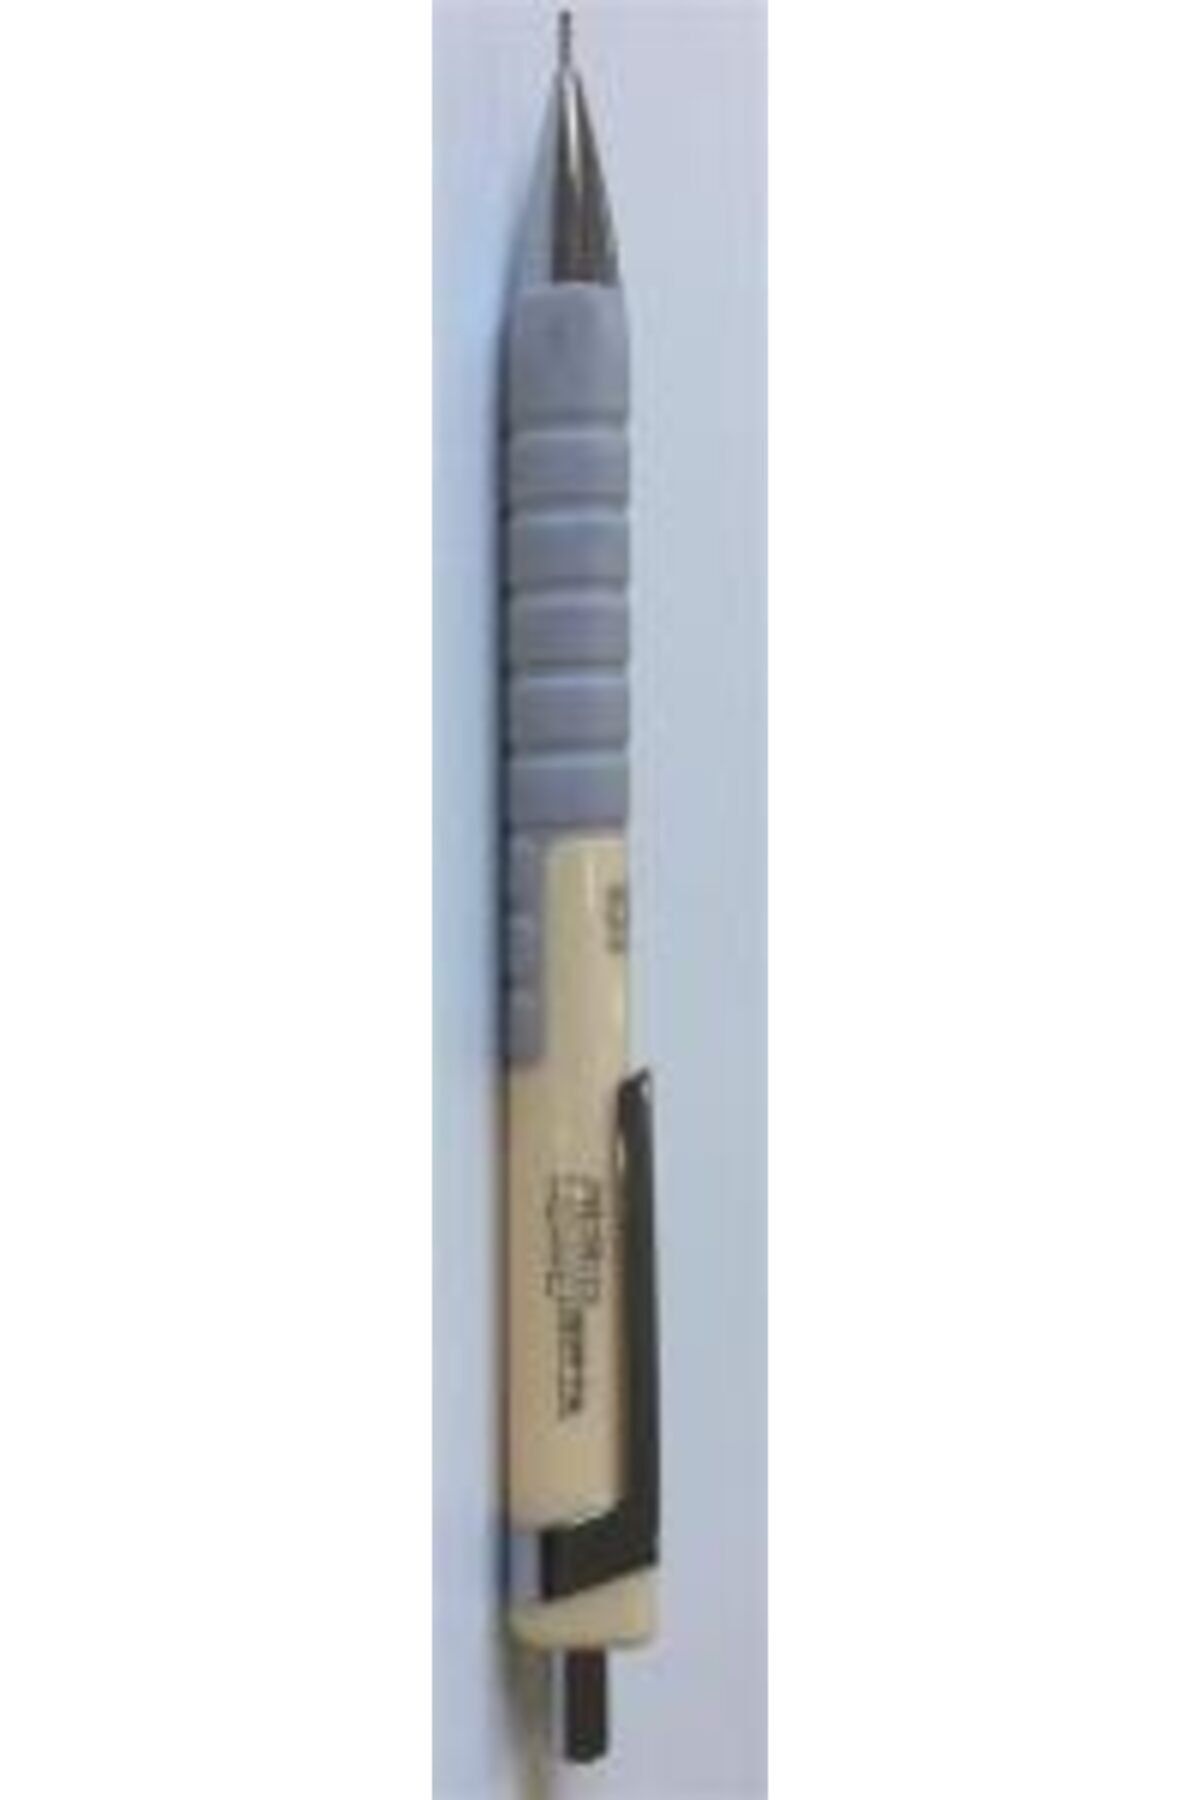 Gıpta Versatil Kalem (mekanik Uçlu Kurşun Kalem) Kipling 0.7mm Pastel Krem (12 Li Paket) K1856